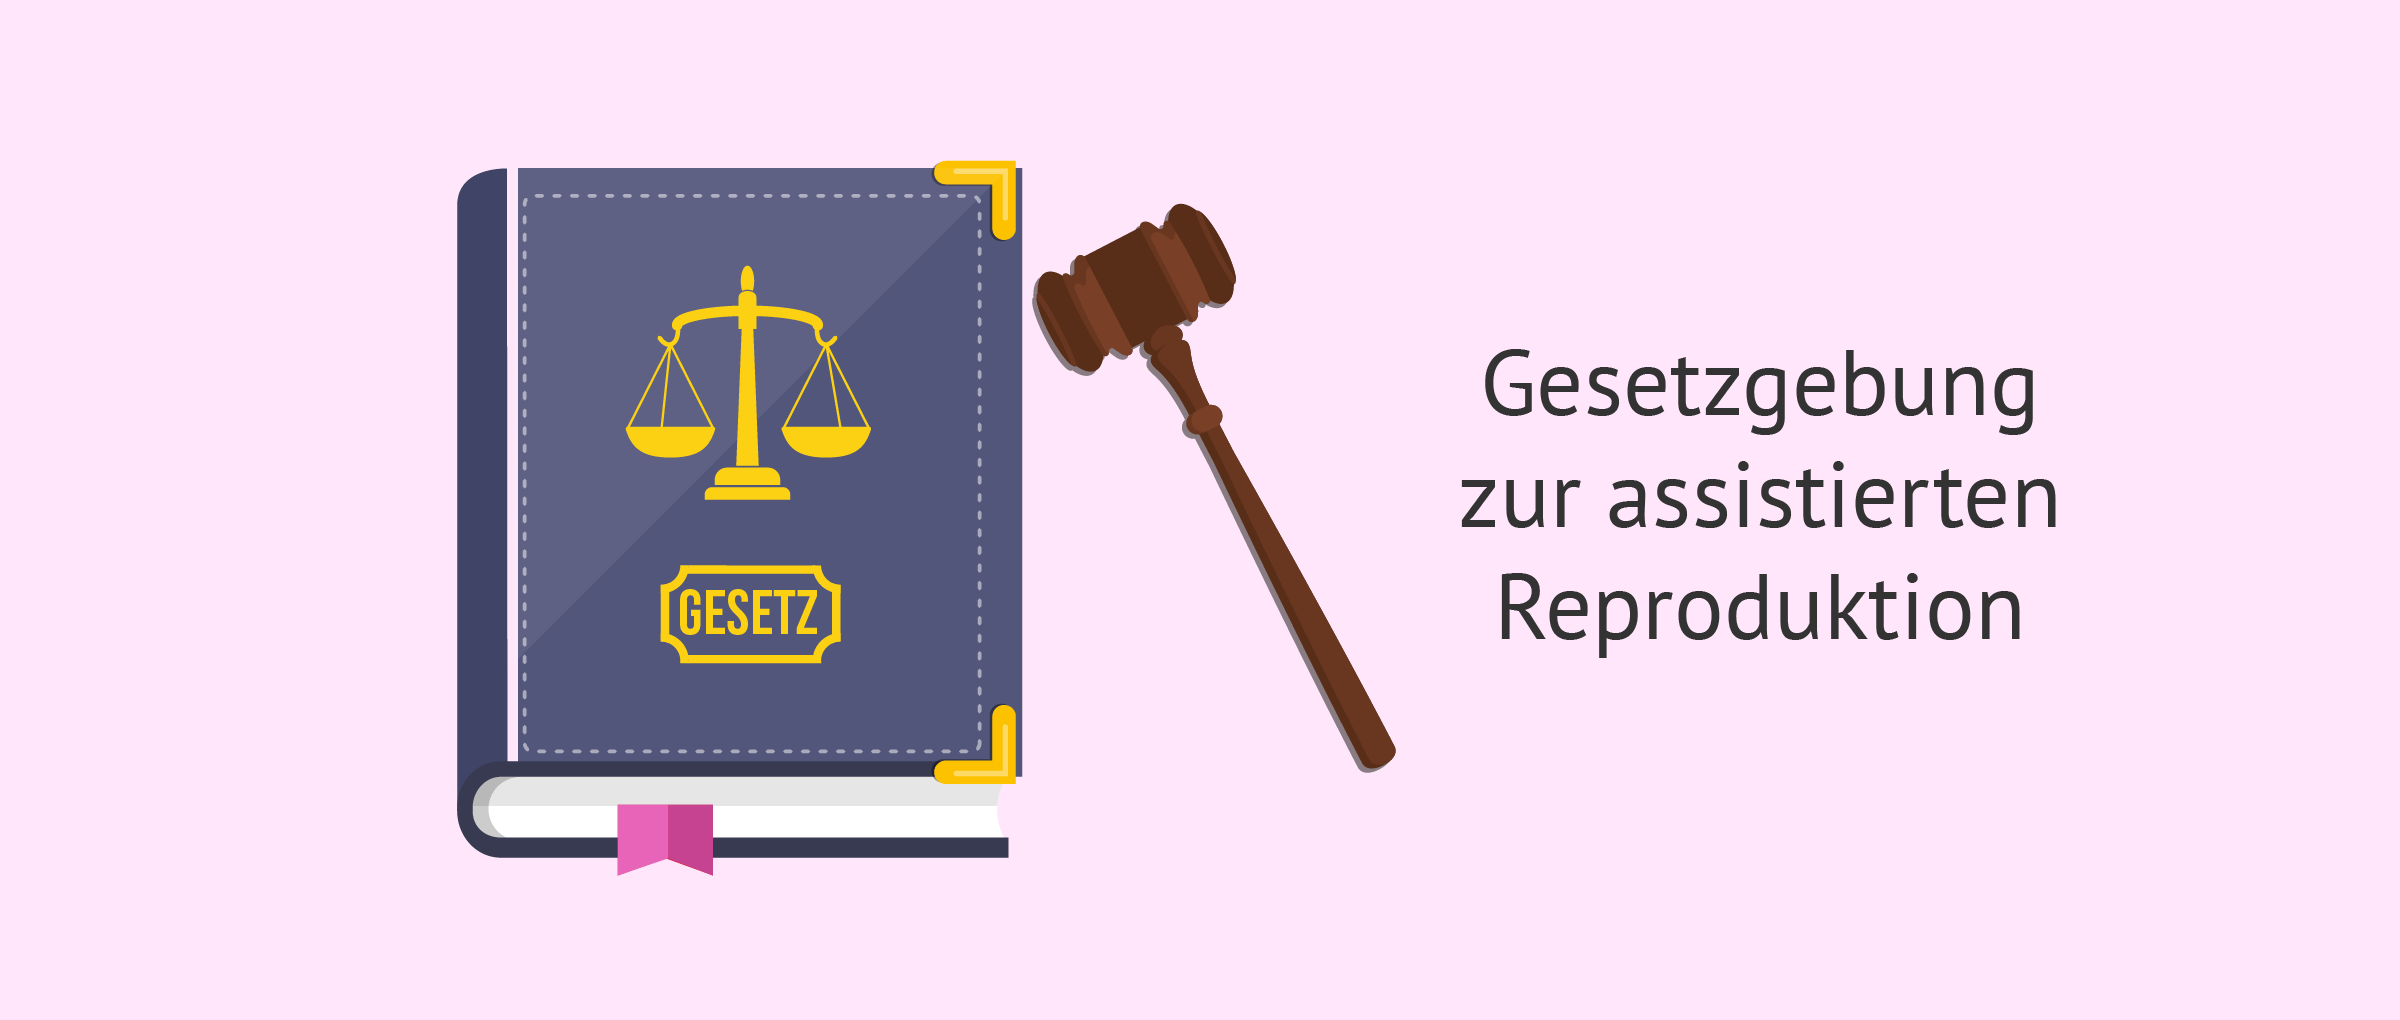 Das sagt die deutsche Gesetzgebung zur Leihmutterschaft